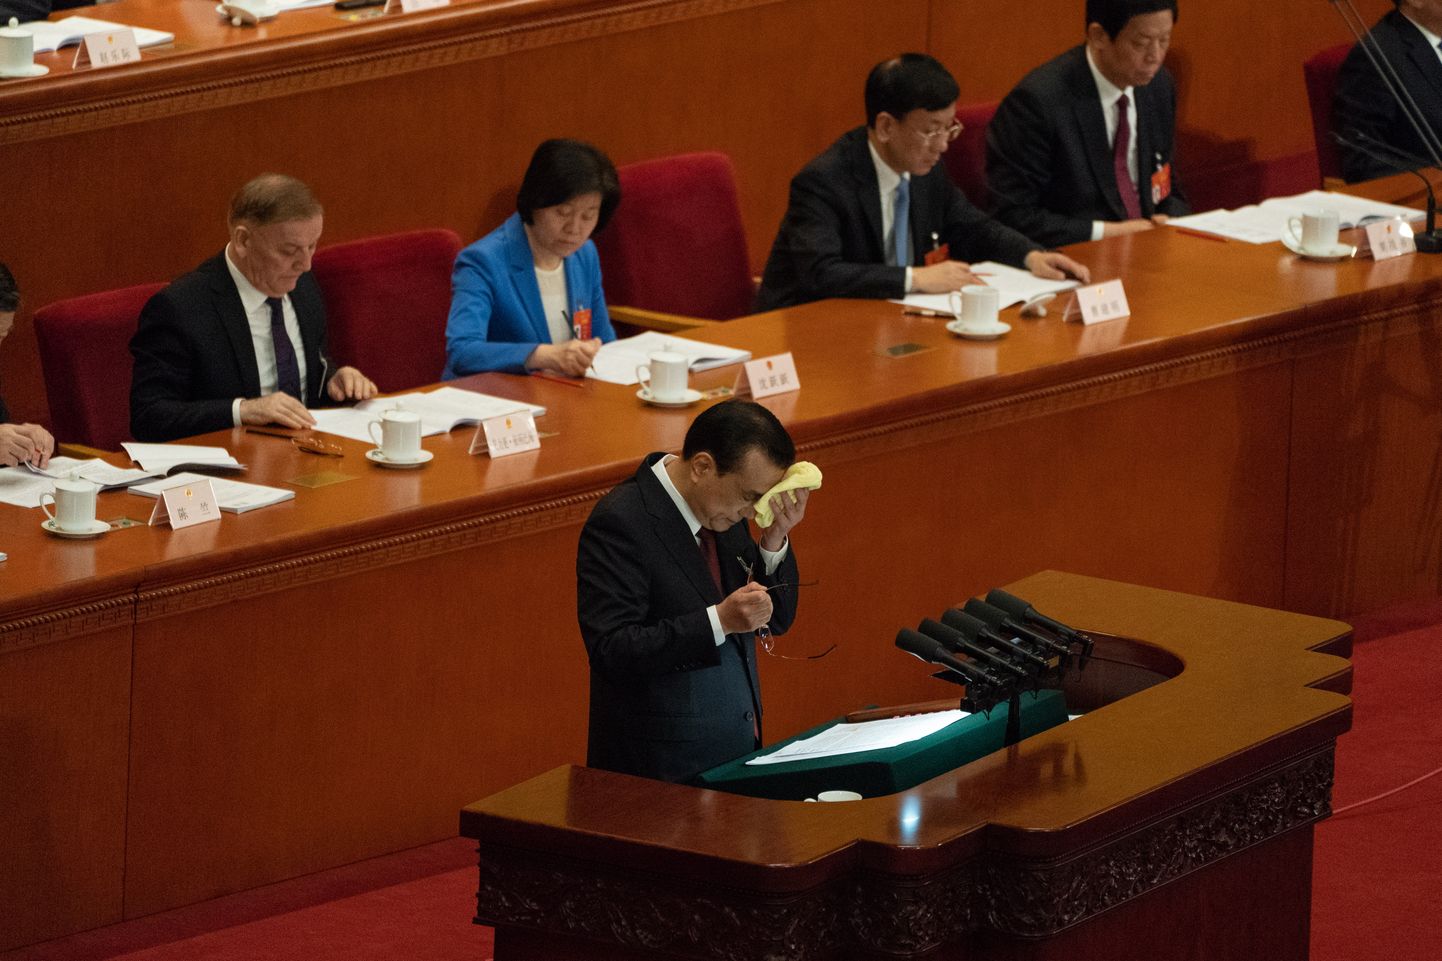 Hiina peaminister Li Keqiang enne kõne alustamist nägu pühkimas.